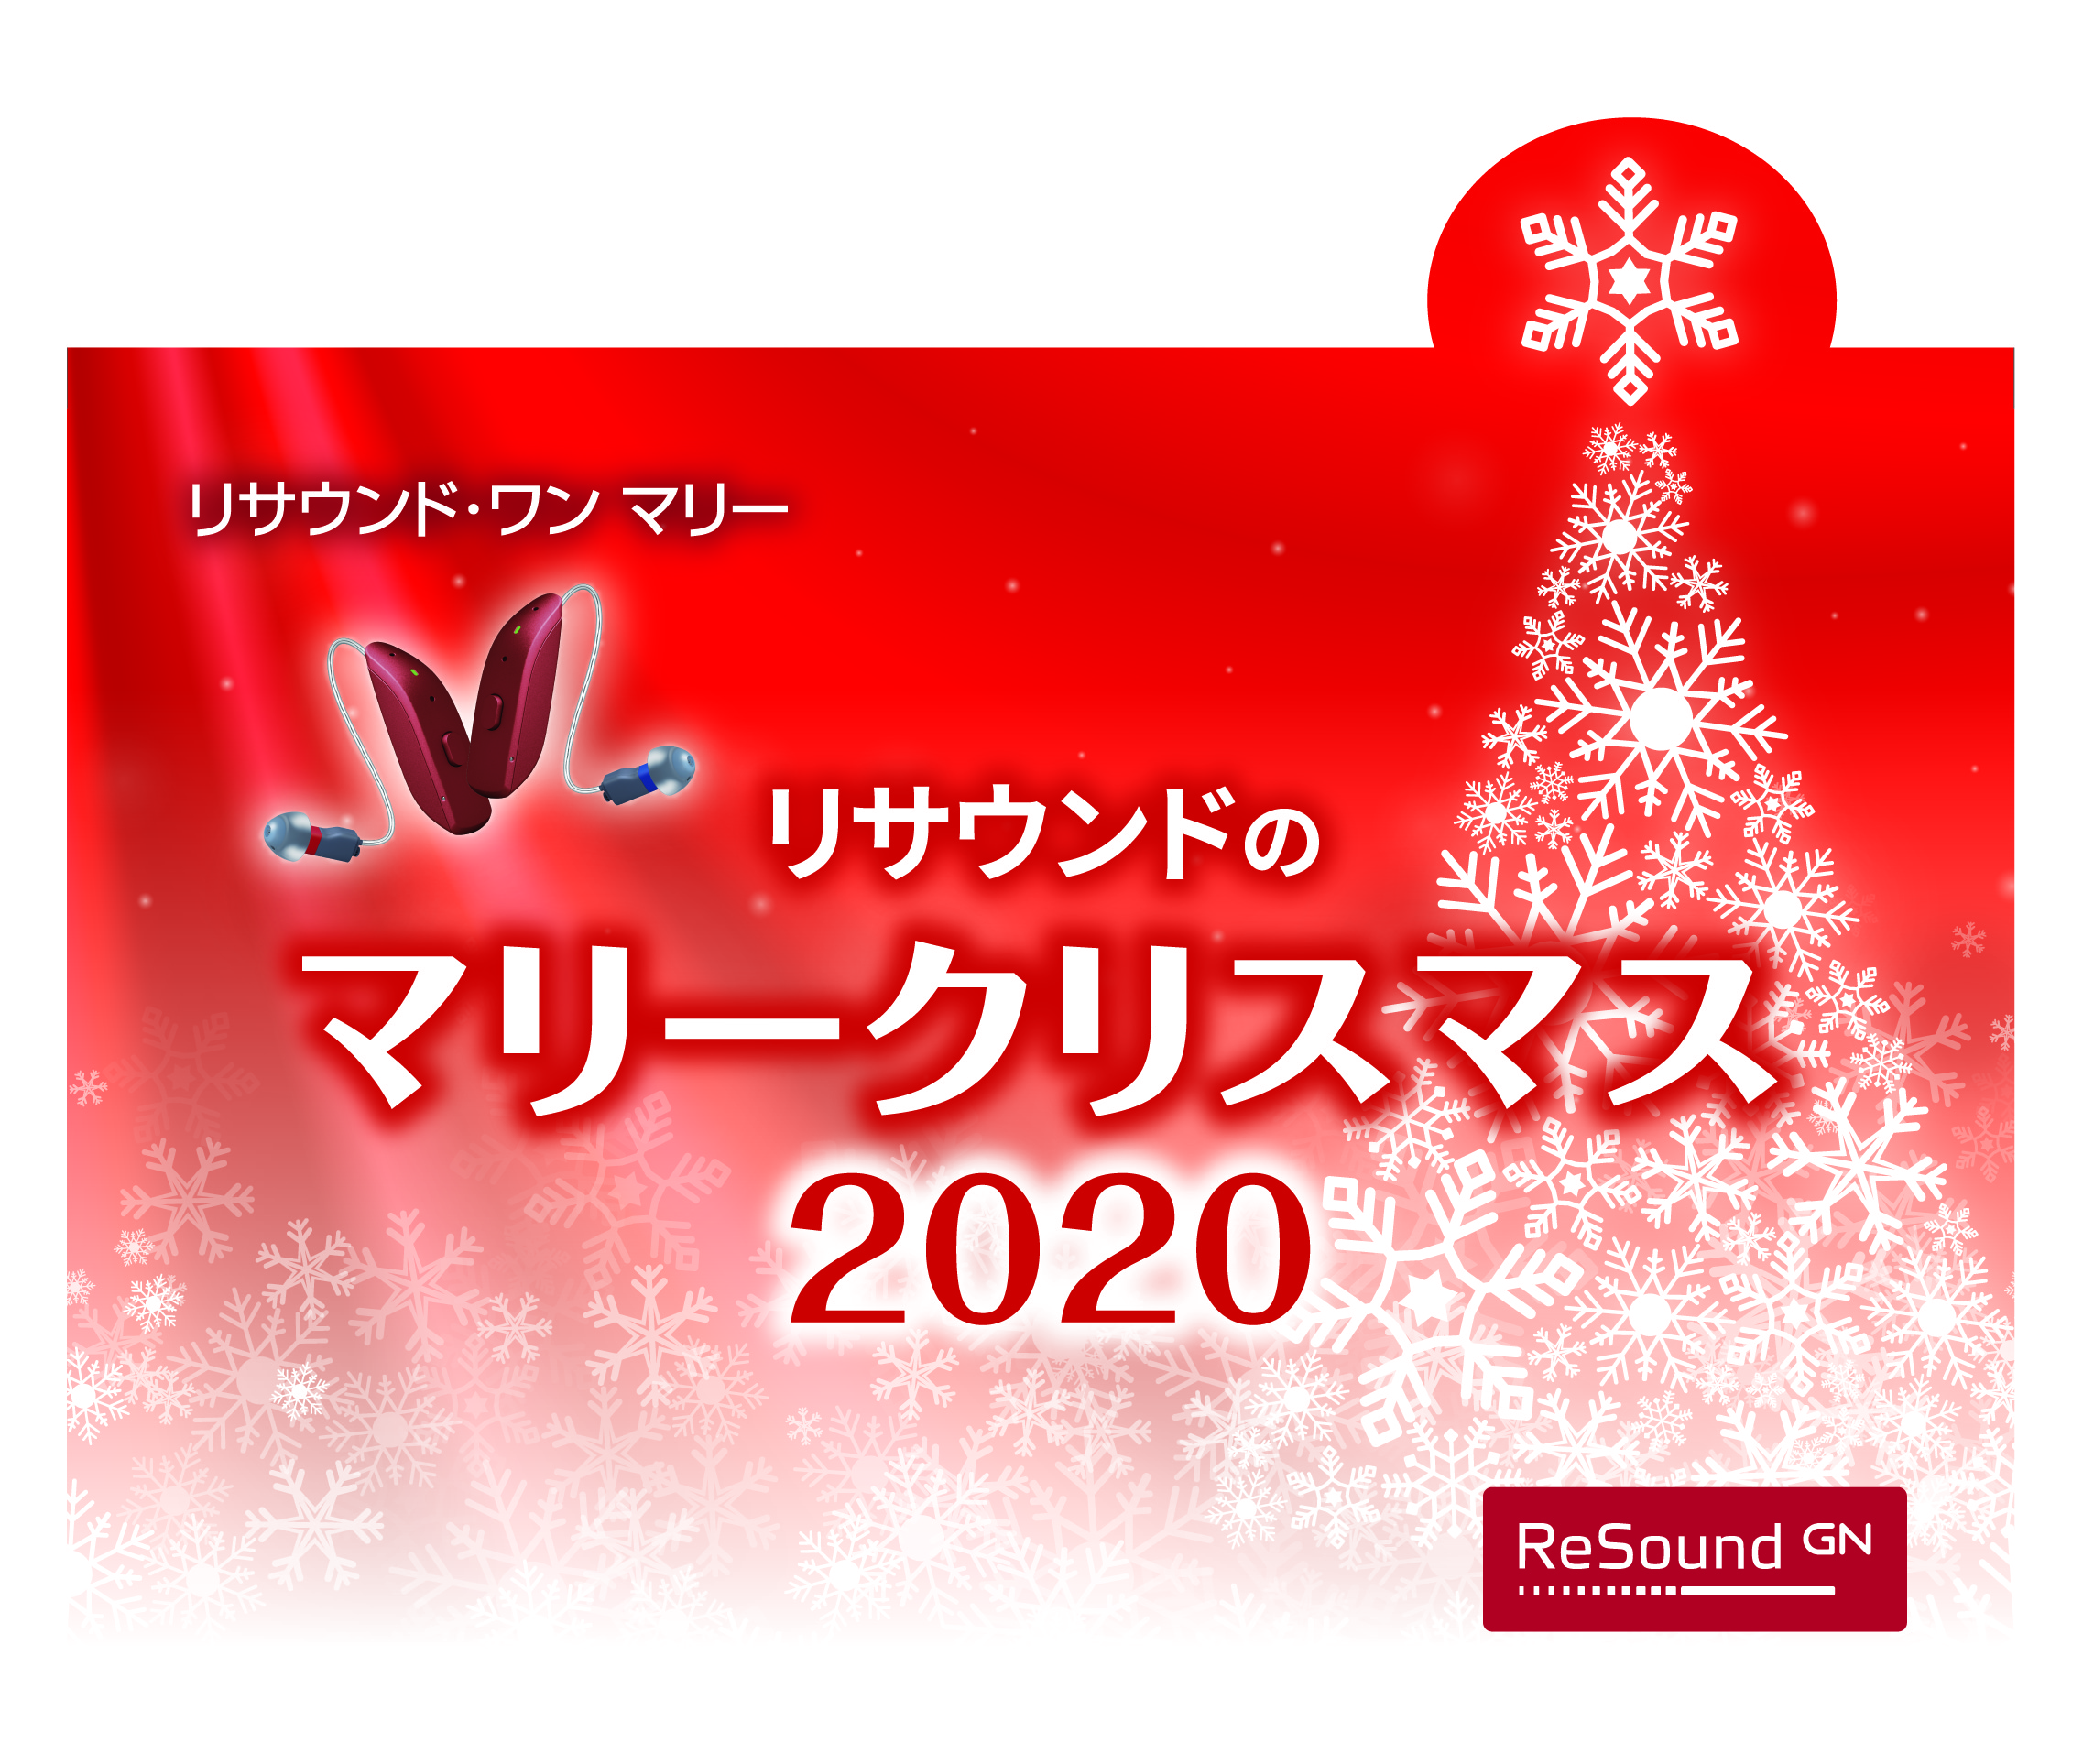 リサウンドの マリー クリスマス キャンペーン Gnヒアリングジャパン株式会社のプレスリリース